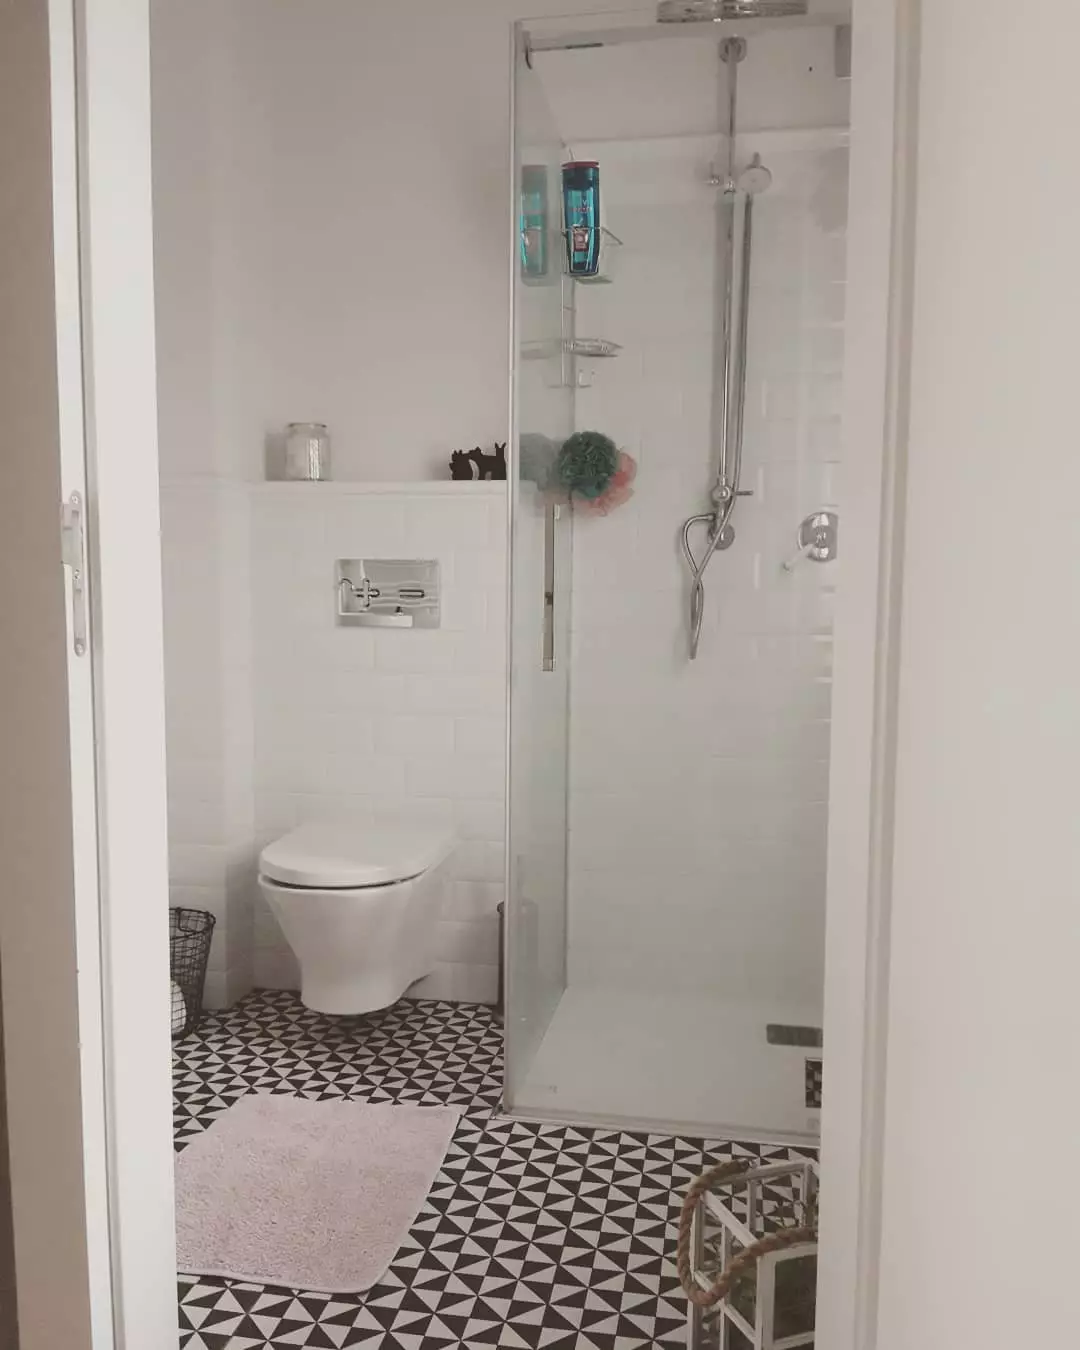 Gagasan untuk pendaftaran kamar mandi gabungan kecil di apartemen: Foto